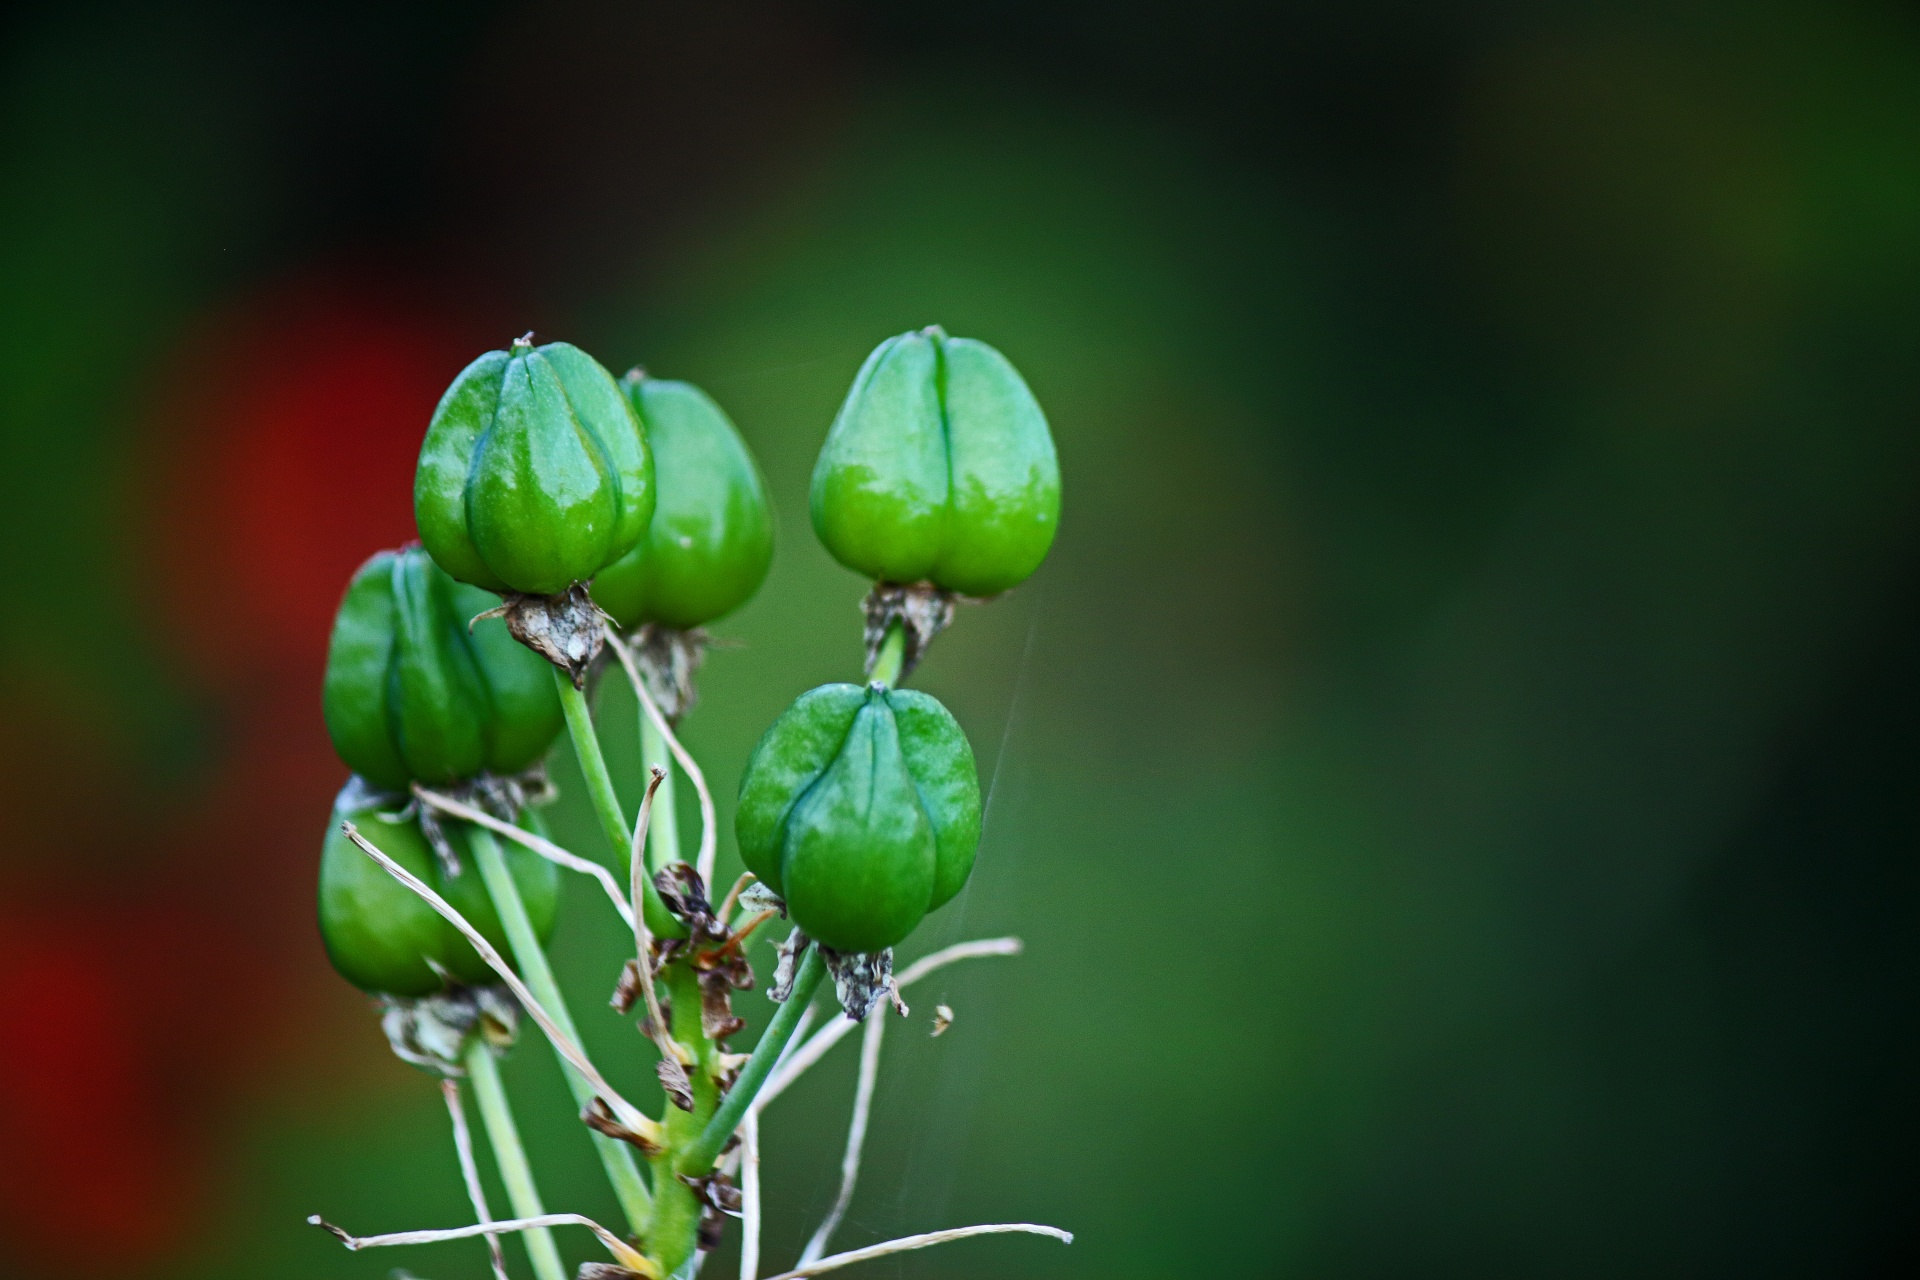 Zelená semena na špičce rostliny